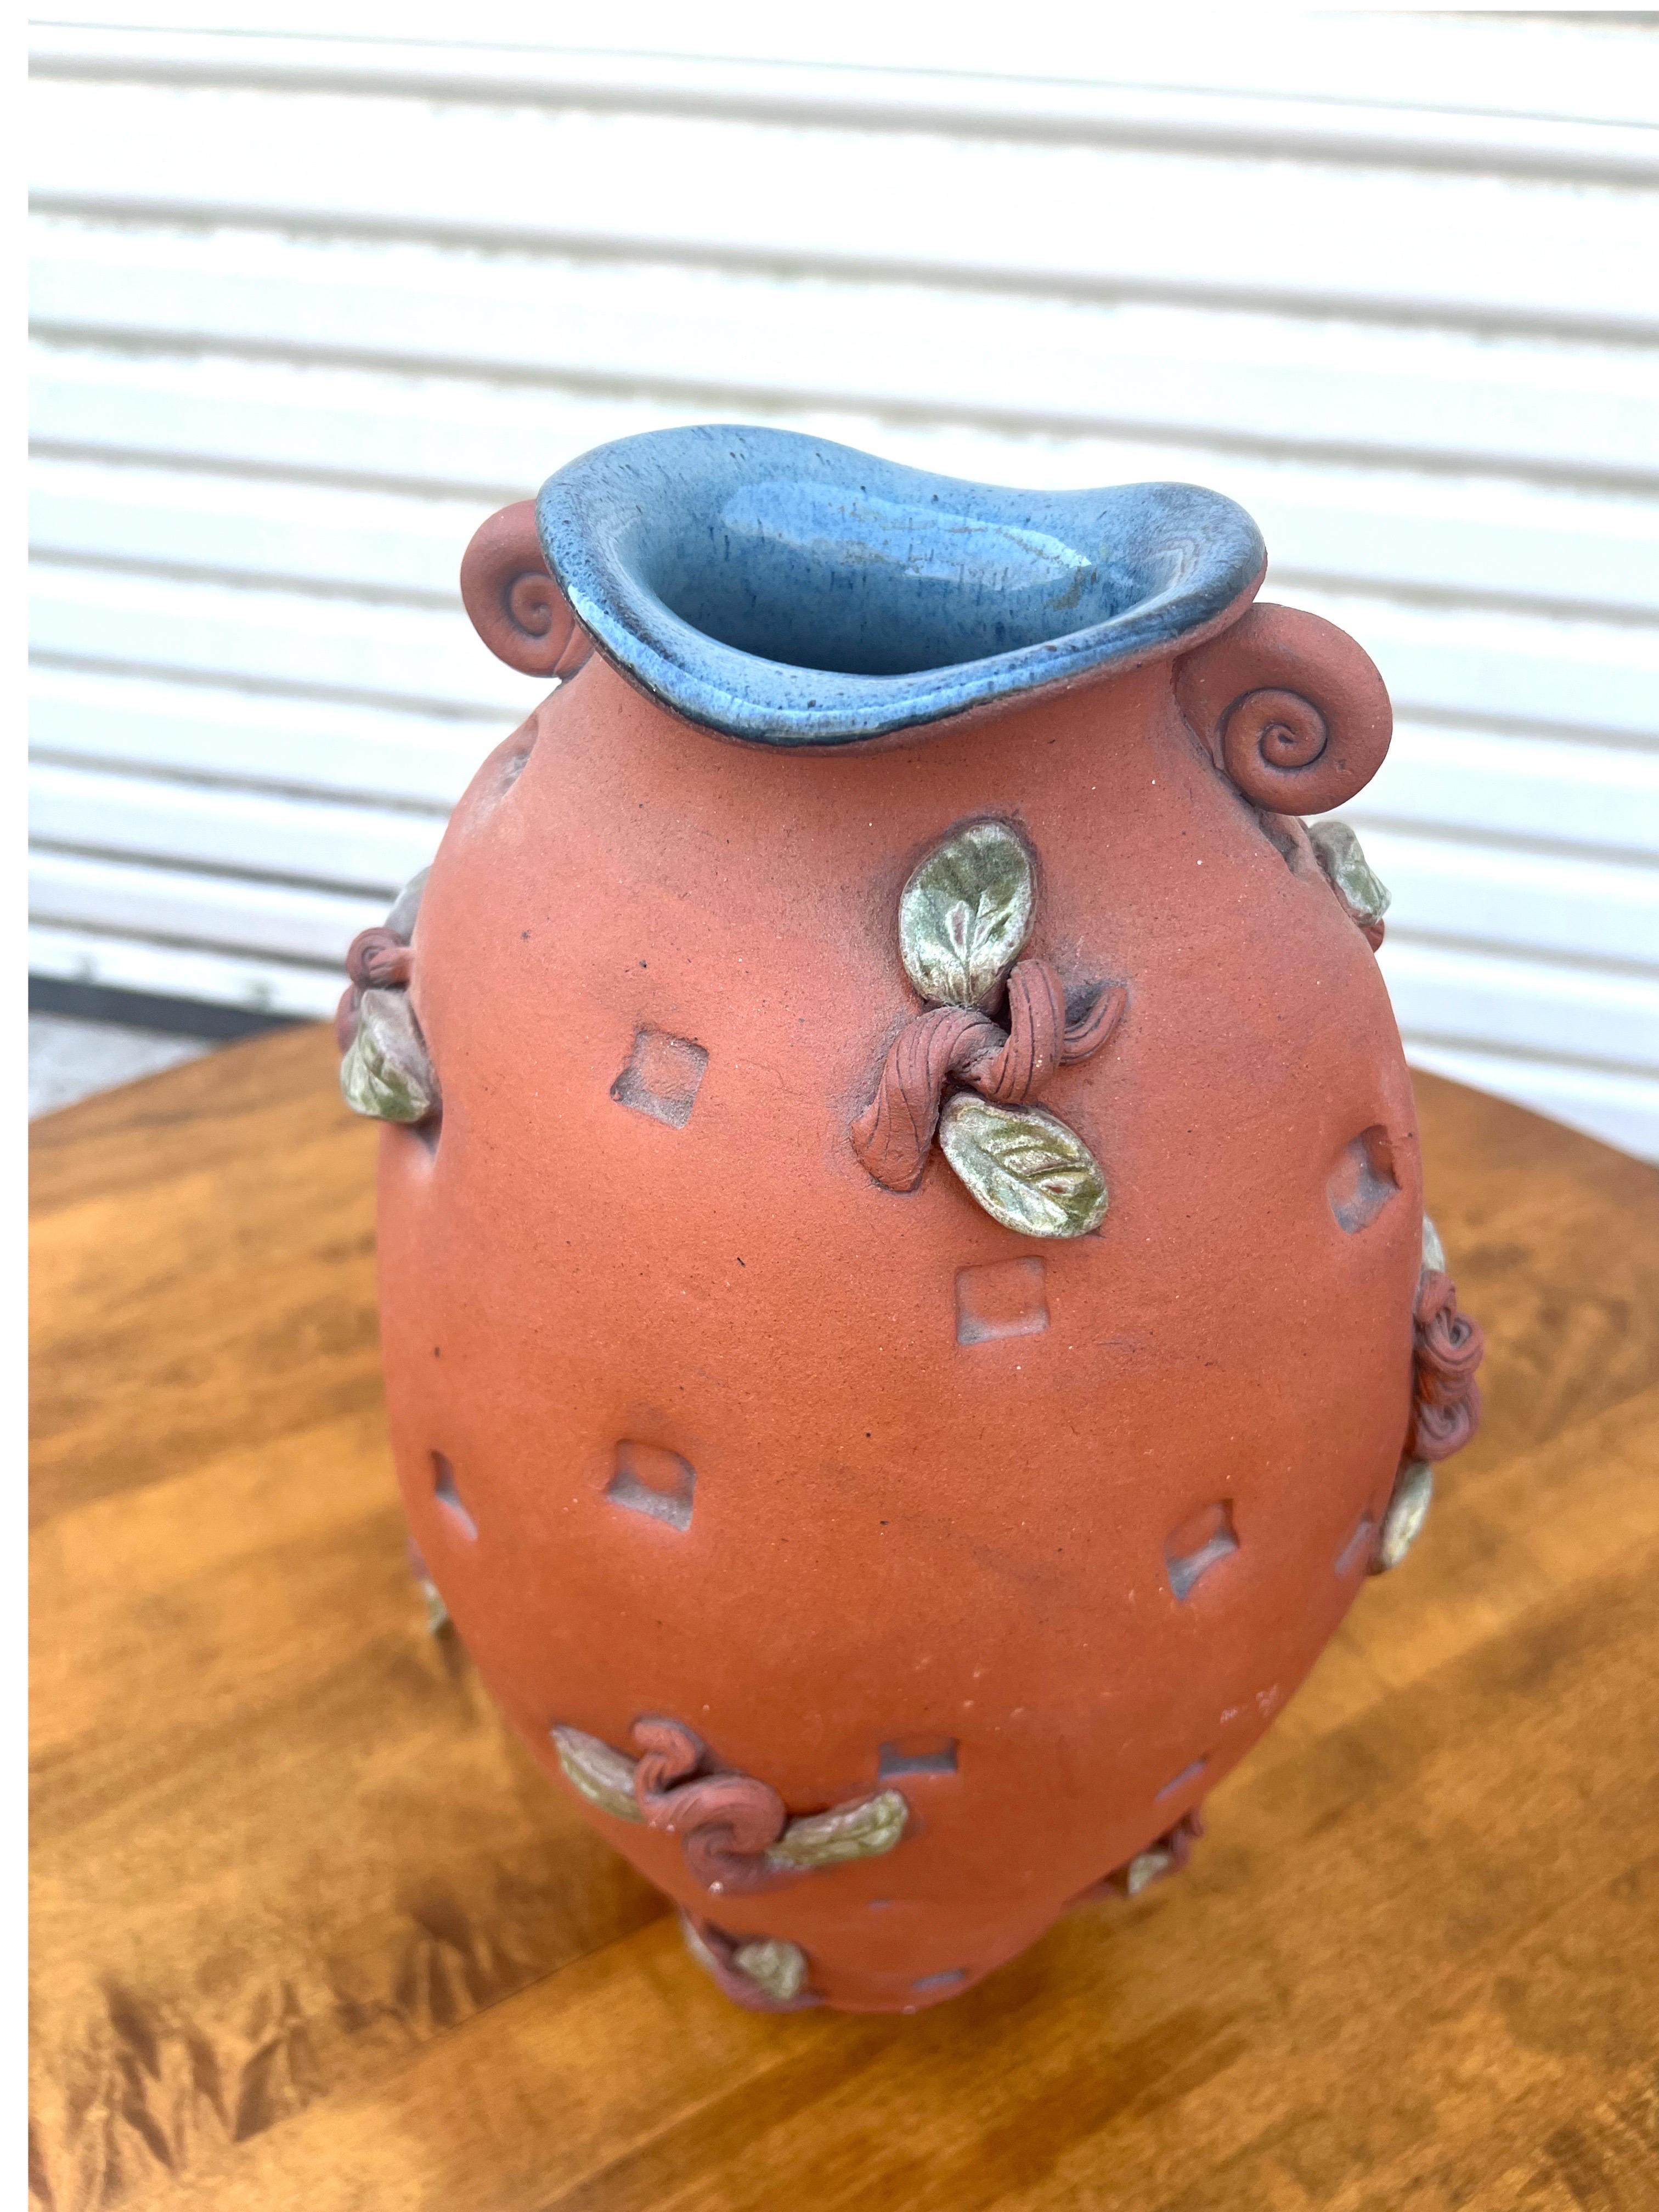 Diese atemberaubende Terrakotta-Vase von Studio Pottery hat schöne applizierte Blätter und Stängel.  Die Innenseite der Vase ist mit einer schönen blauen Hochglasur versehen, die einen sehr schönen Kontrast bildet.